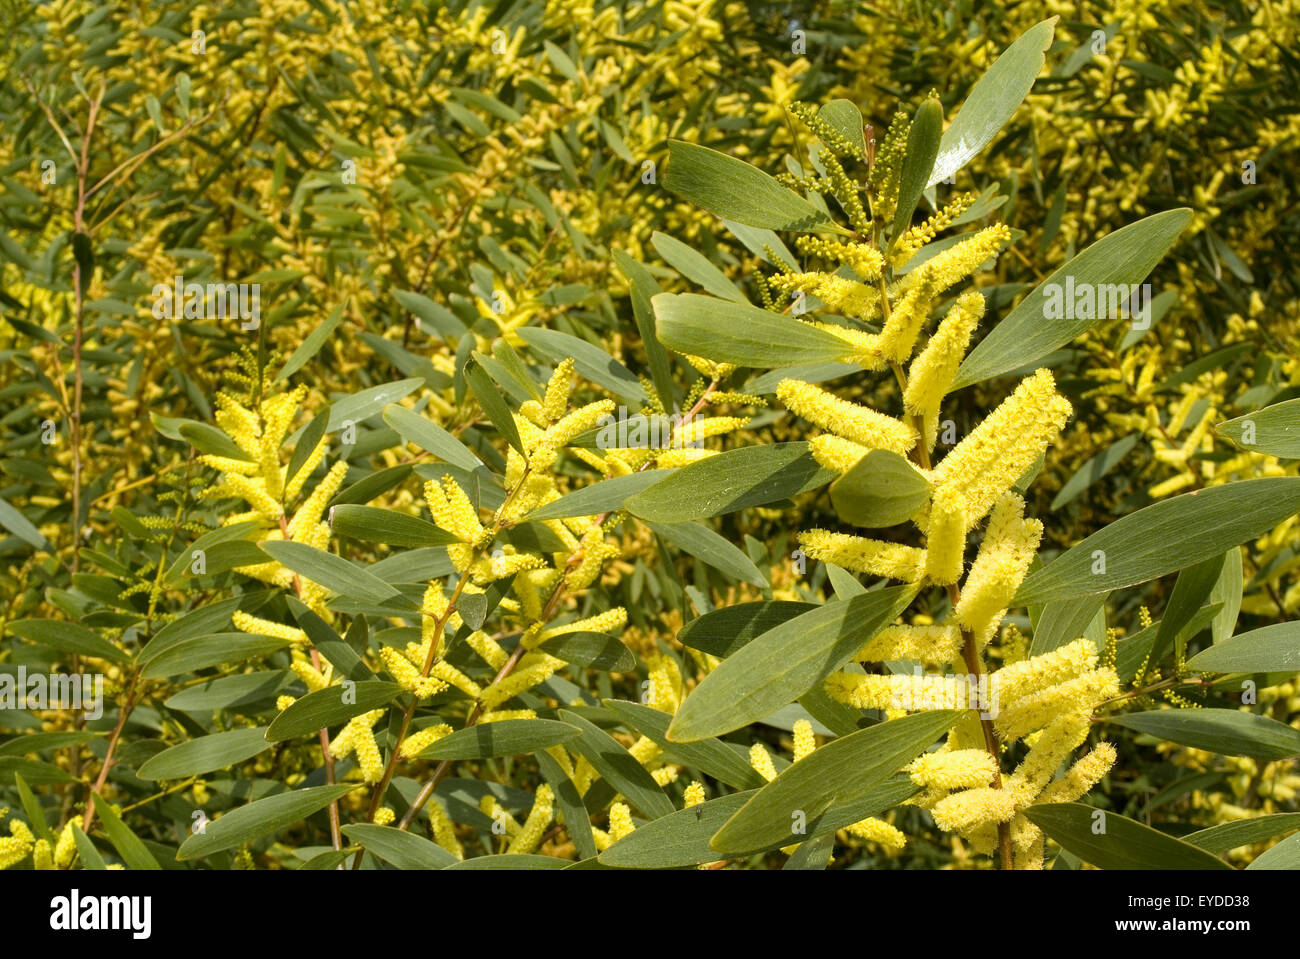 Long-leaved wattle, Coast Wattle or Sydney Golden Wattle (Acacia longifolia) Stock Photo